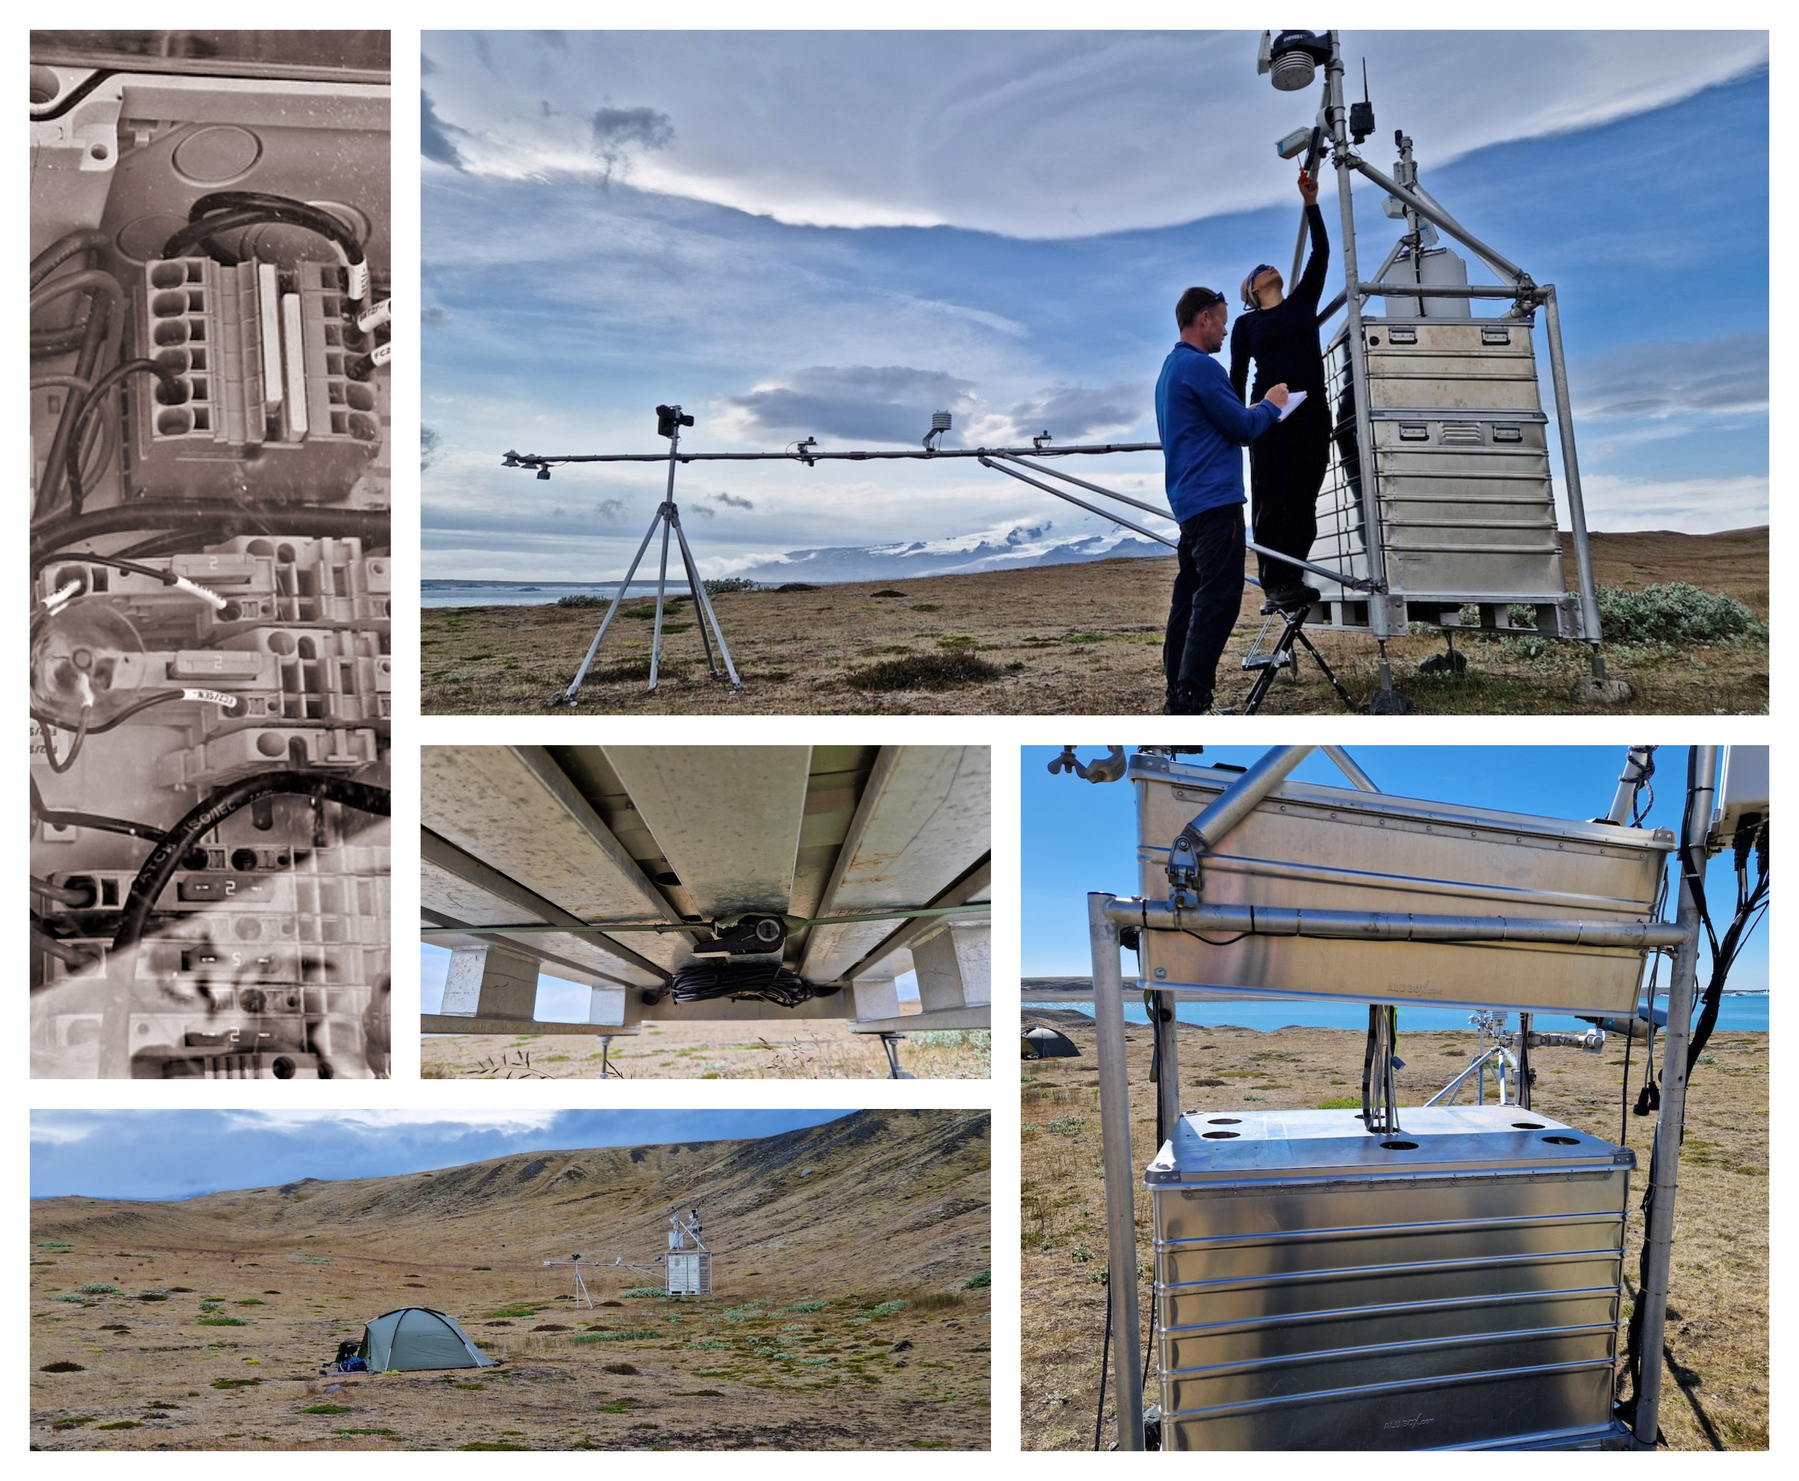 Preparing for the final year… NEW iMESSENGER about the final year for the Field Station Solander’s Eye at Breiðamerkurjökull, within the Vatnajökull National Park in Iceland. www.ikfoundation.org/news/imes…